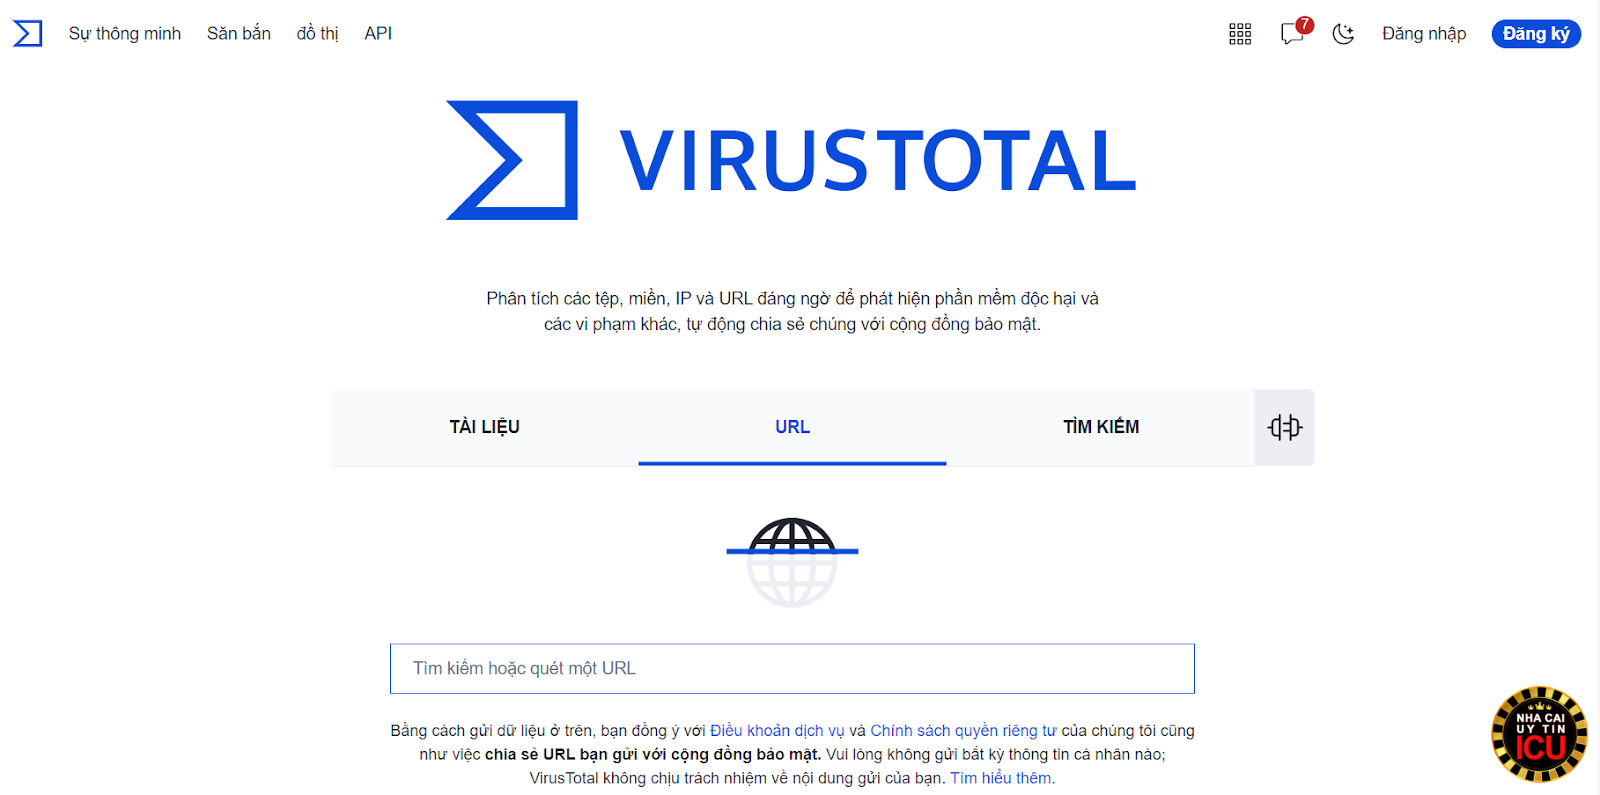 Nhận biết nhà cái lừa đảo thông qua tool VirusTotal